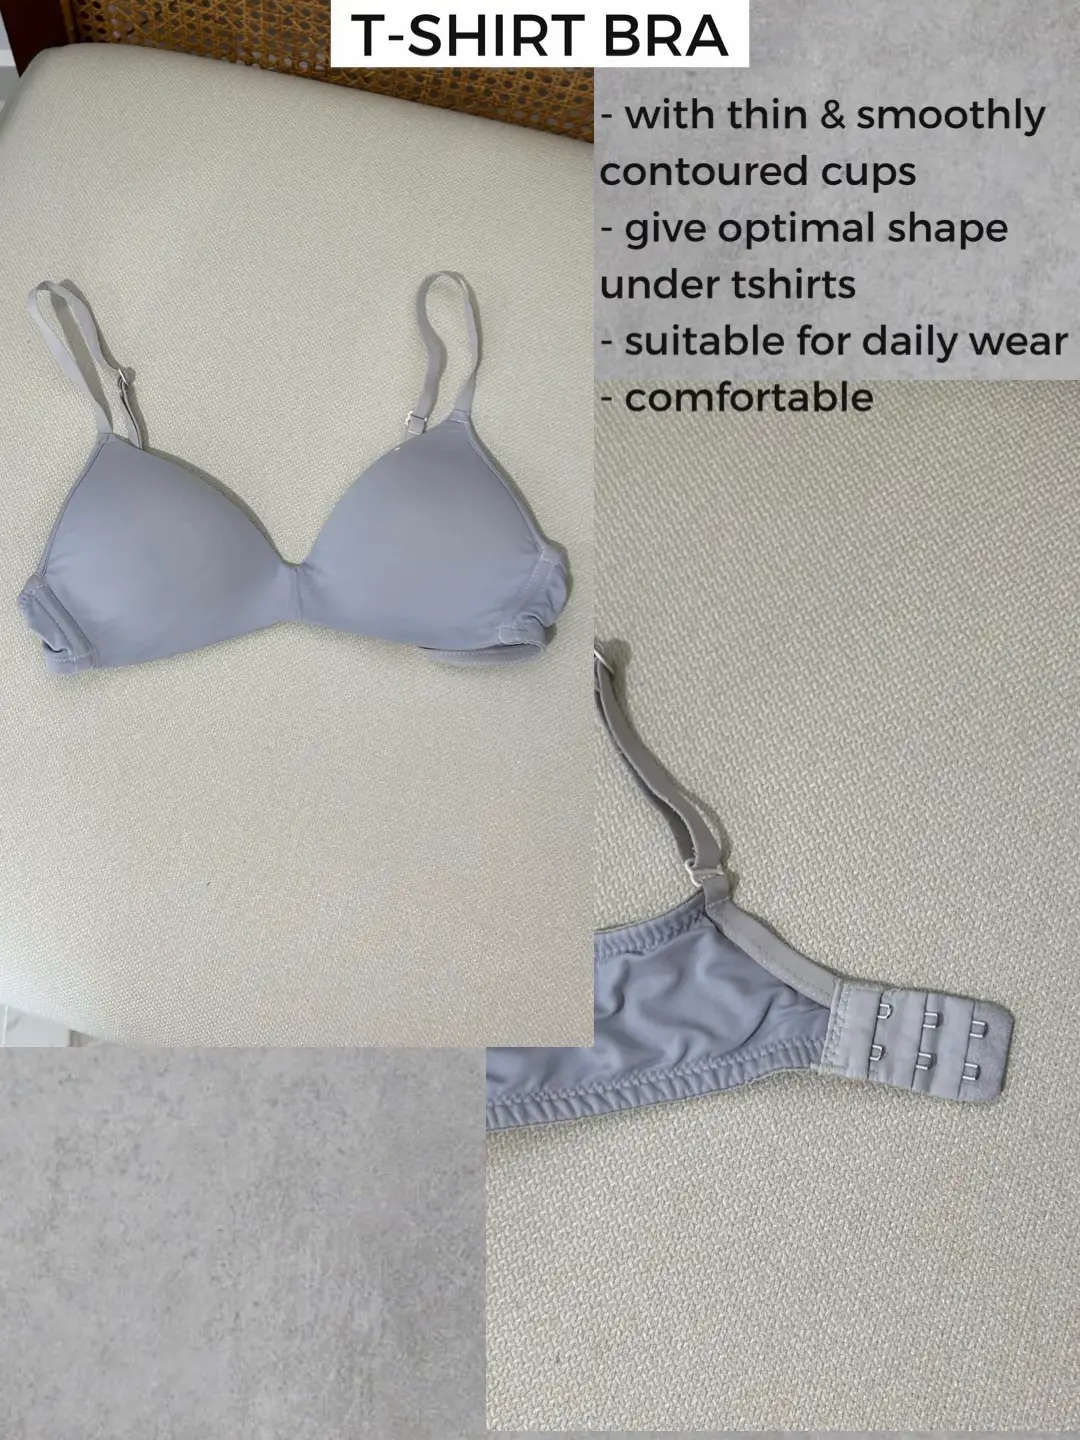 Busty Beauty Blindfolds : face bra